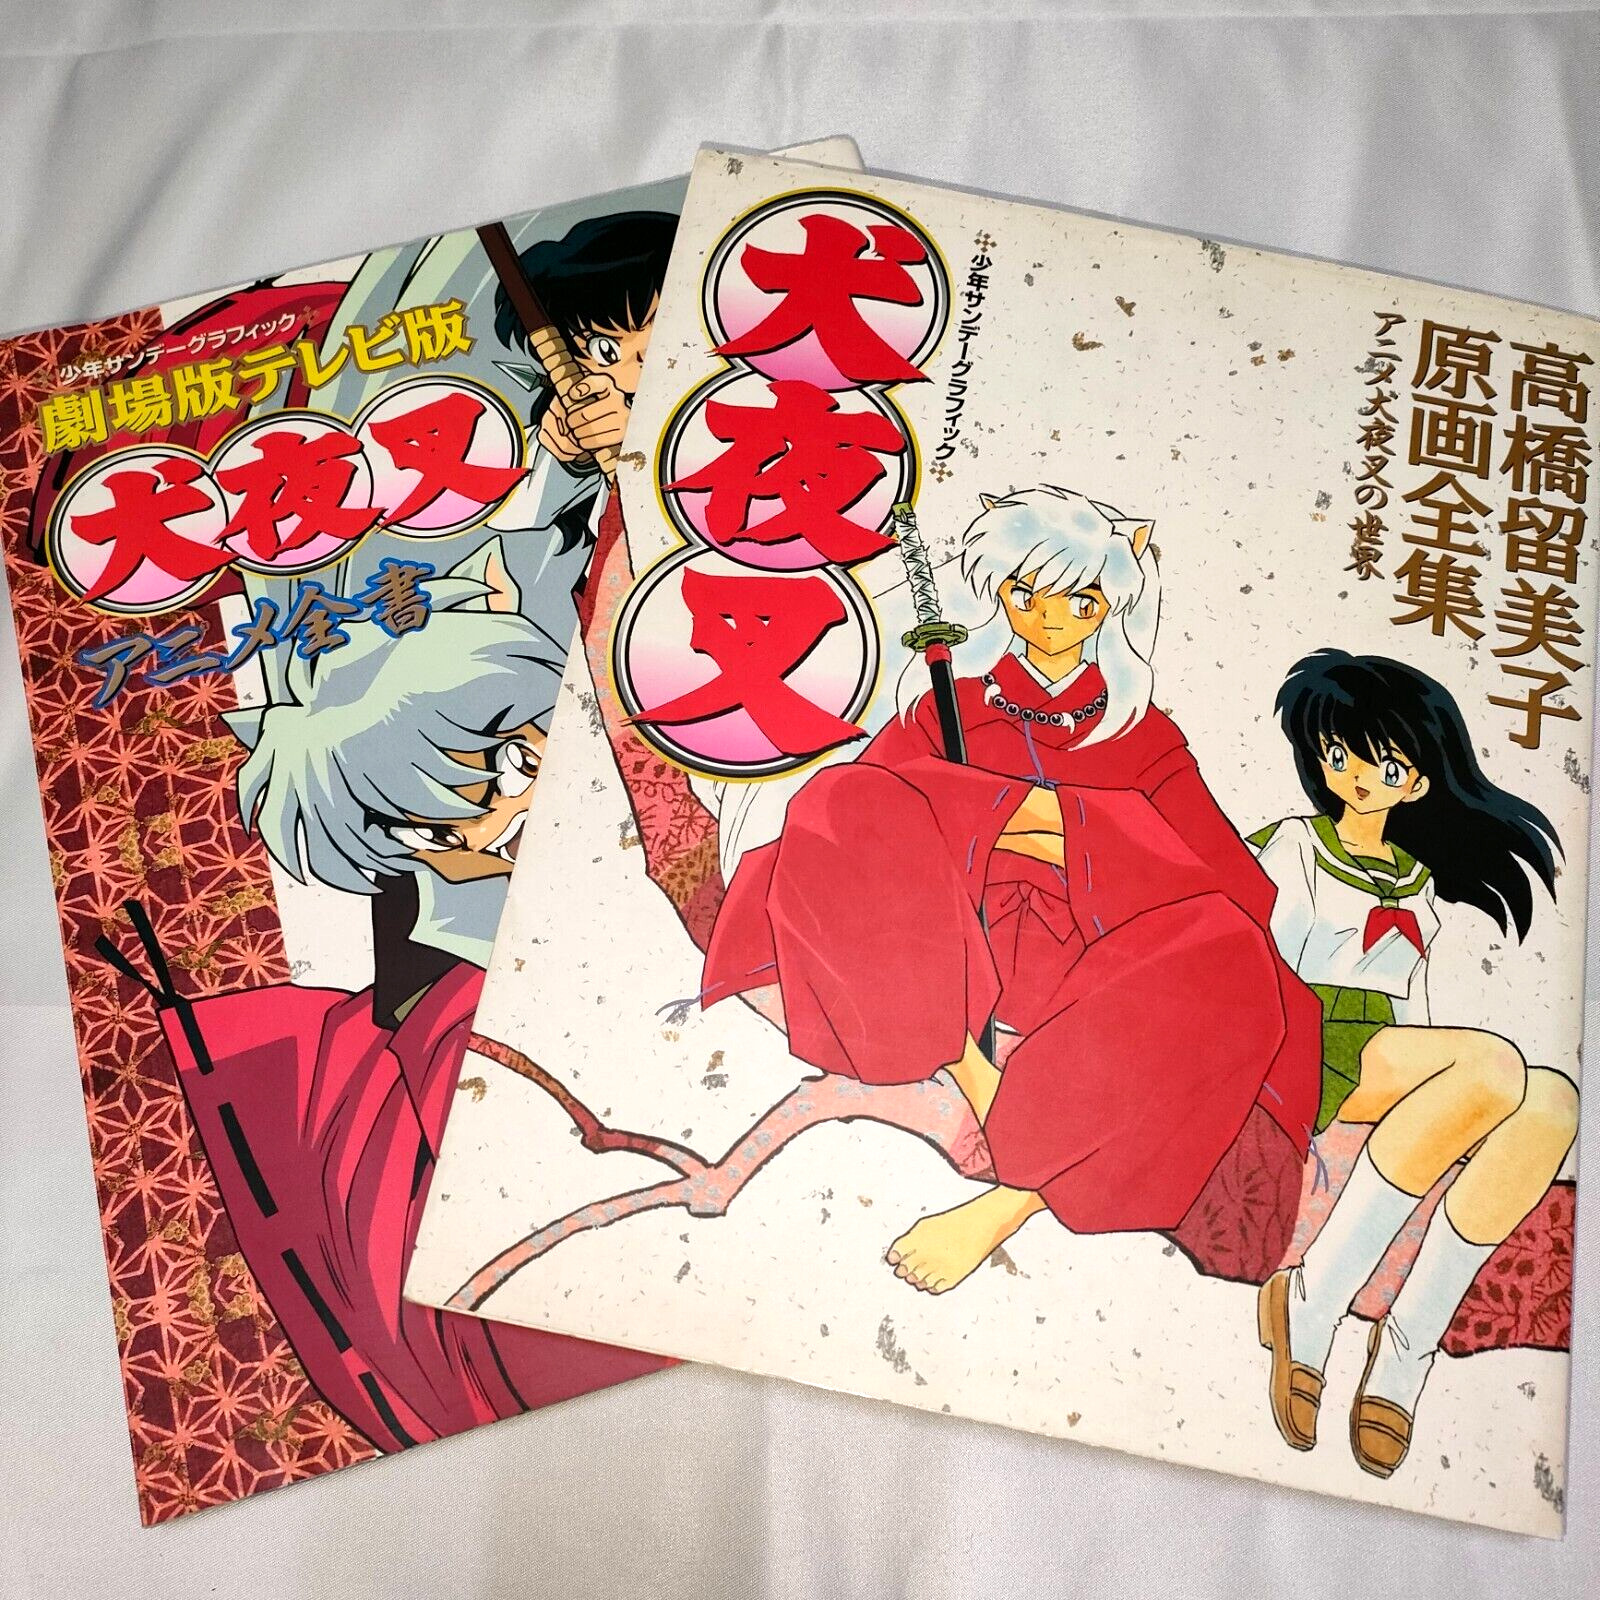 Inuyasha Anime Zensho & Rumiko Takahashi Genga Zenshu Art Book Set of 2 DHL/UPS